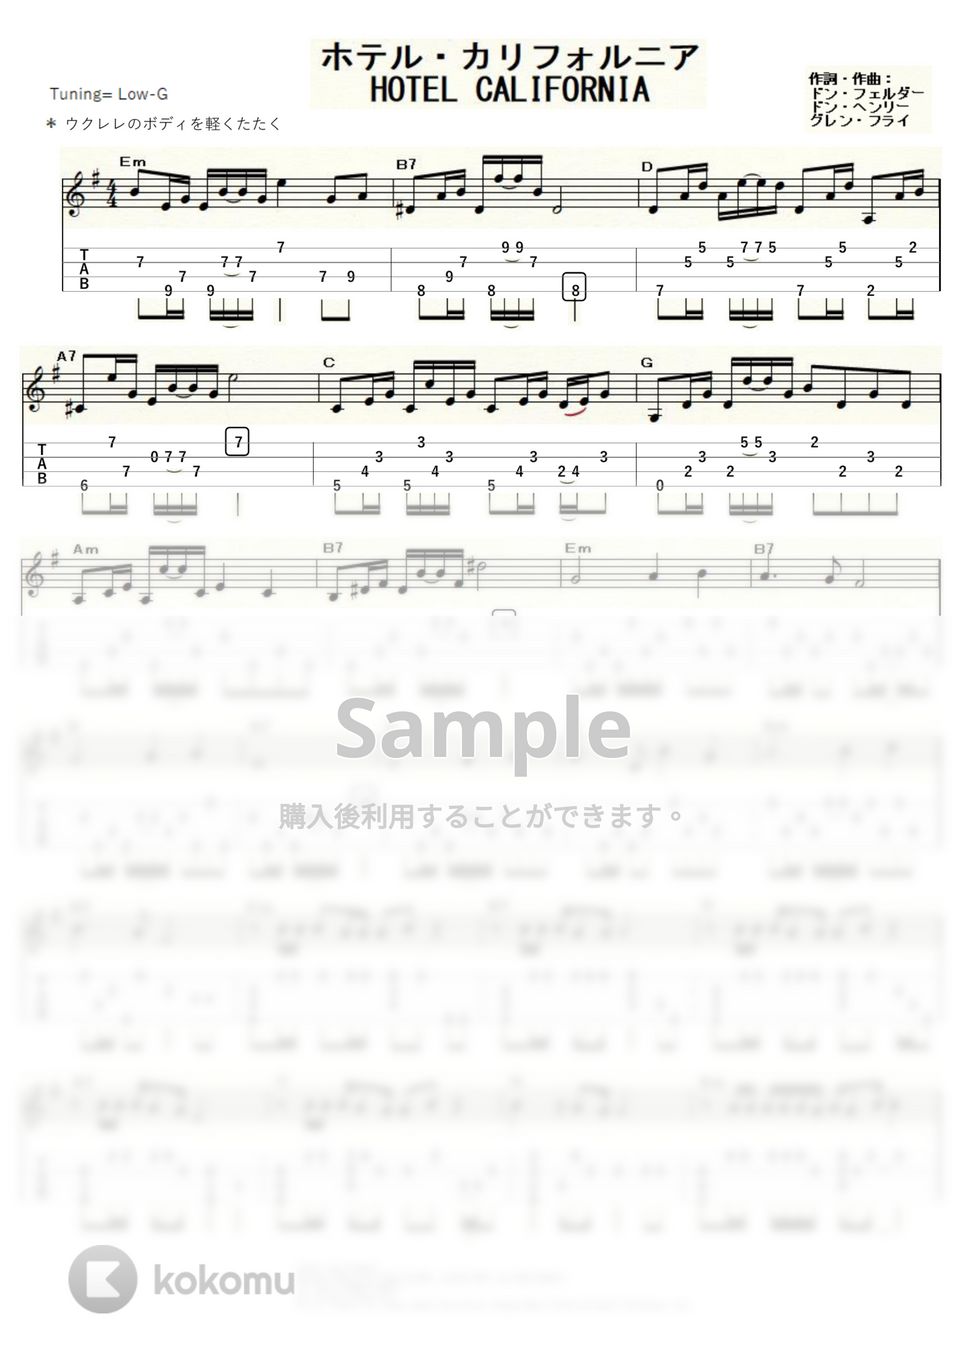 イーグルス - ホテル・カリフォルニア (ｳｸﾚﾚｿﾛ / Low-G / 上級) by ukulelepapa